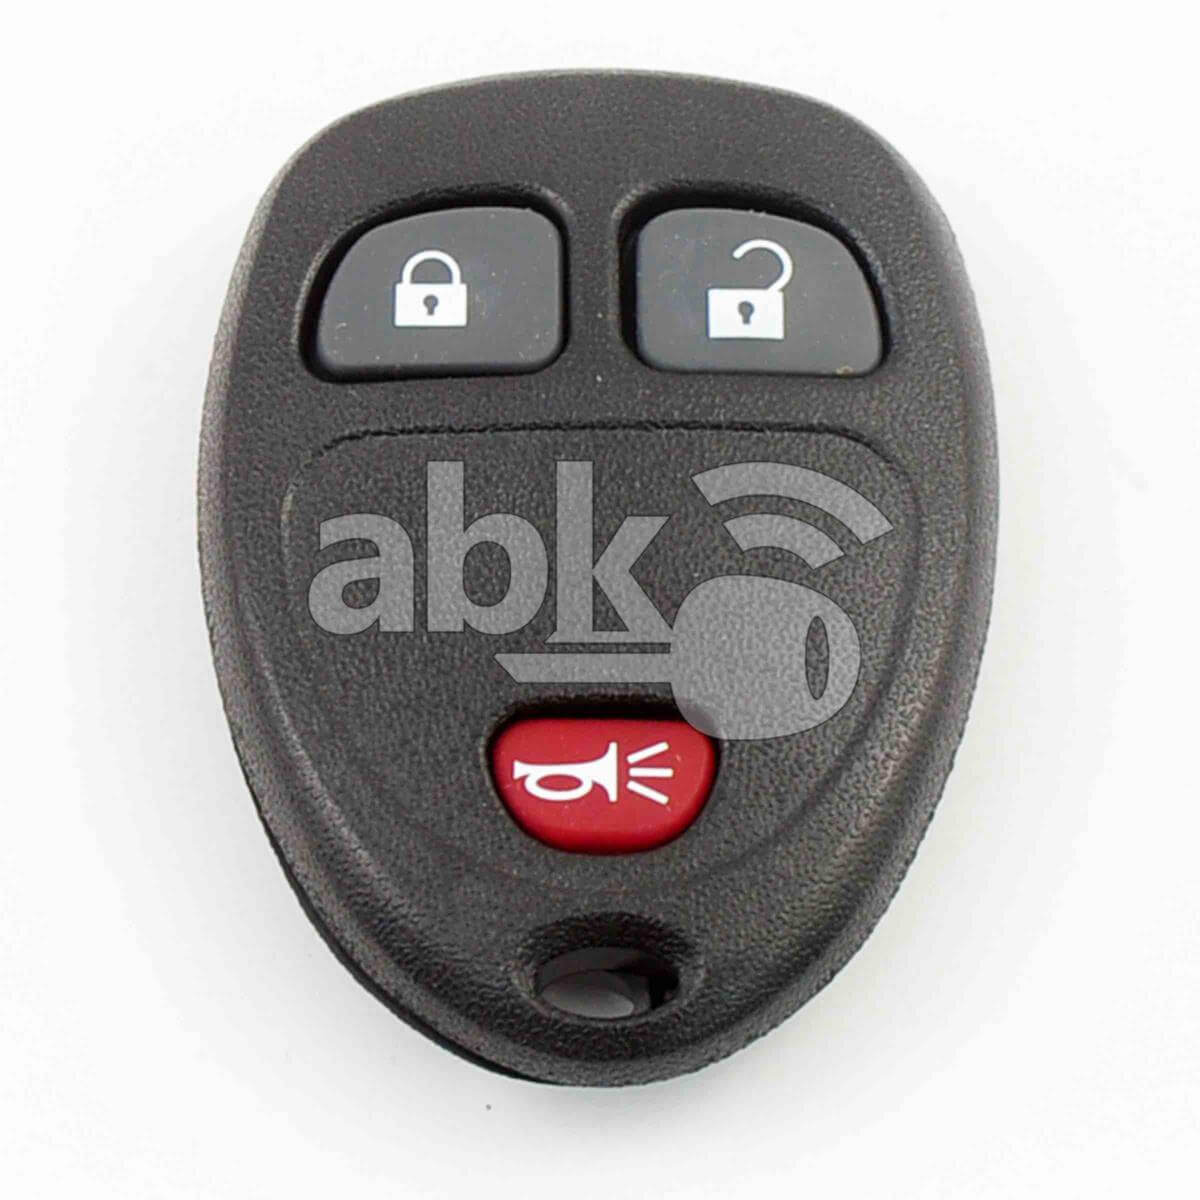 Chevrolet Gmc 2007+ Remote Control Cover 3Buttons - ABK-1157 - ABKEYS.COM